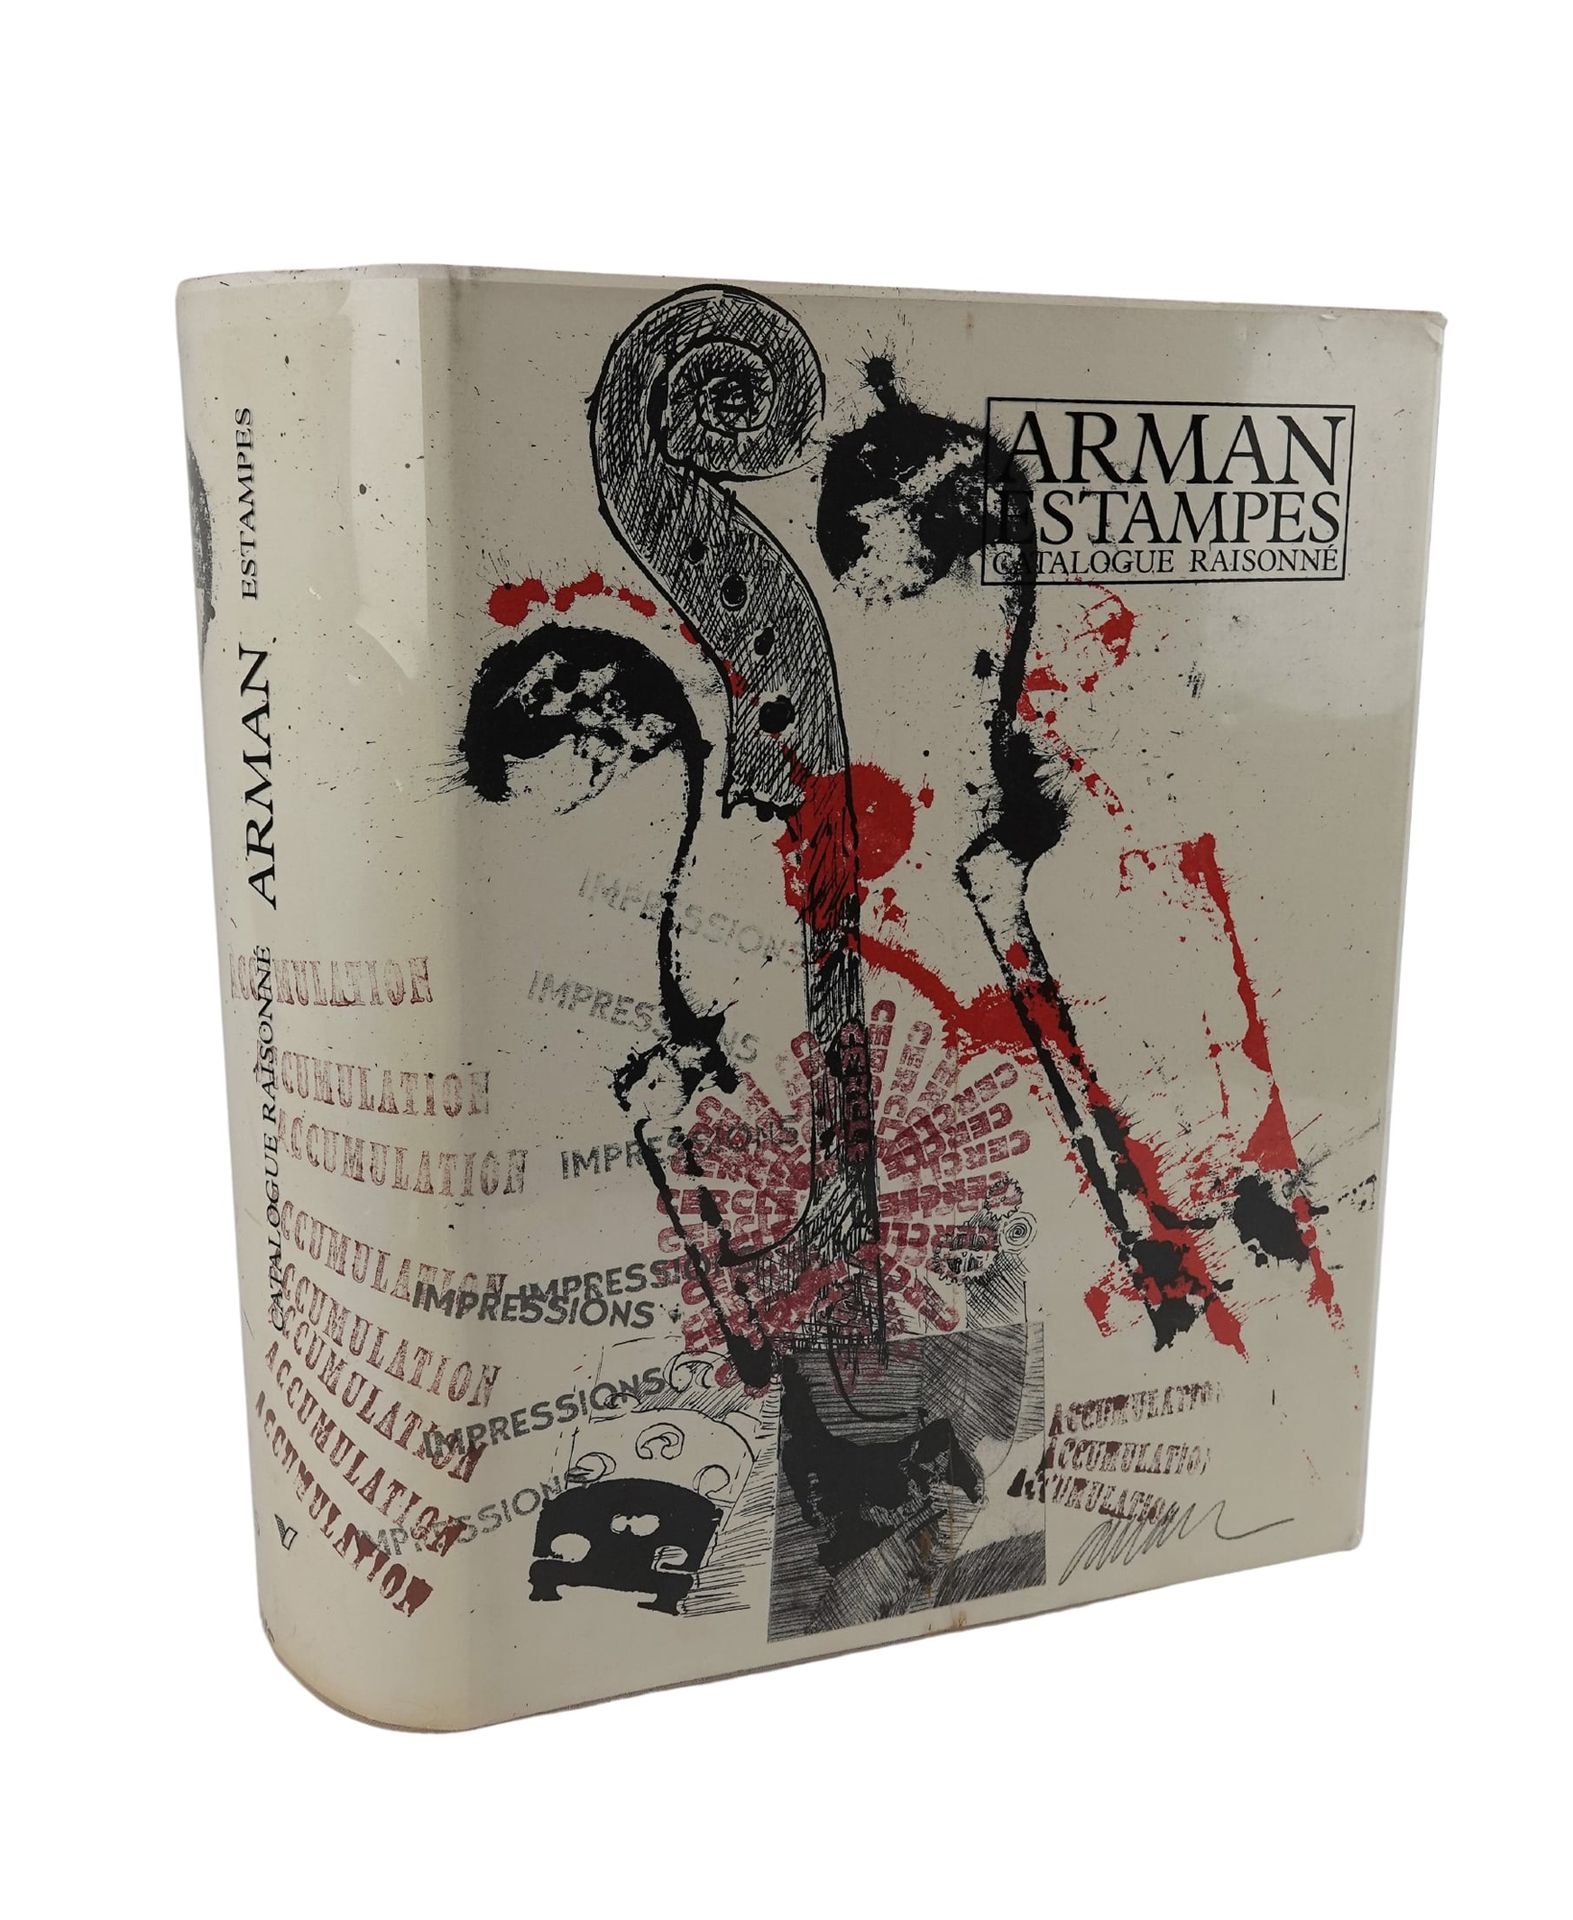 ARMAN (1928-2005) 绘画目录》，1990年
第一版，有两幅阿尔曼签名的原始蚀刻画
已签名但未编号的副本